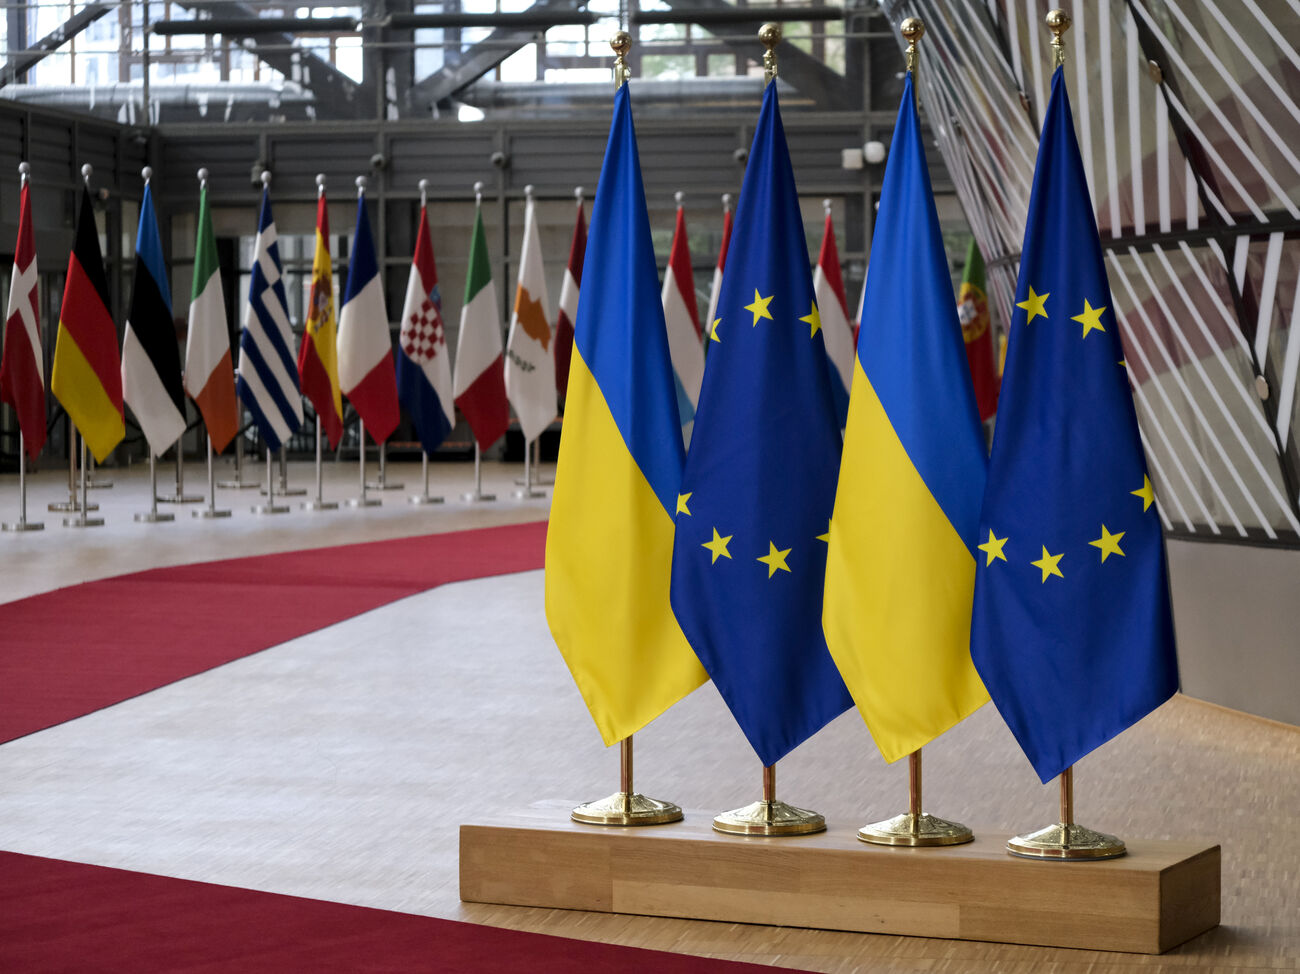 “Абсолютный рекорд за все годы исследований”. По данным социологов, вступление Украины в Евросоюз поддерживает 91% украинцев